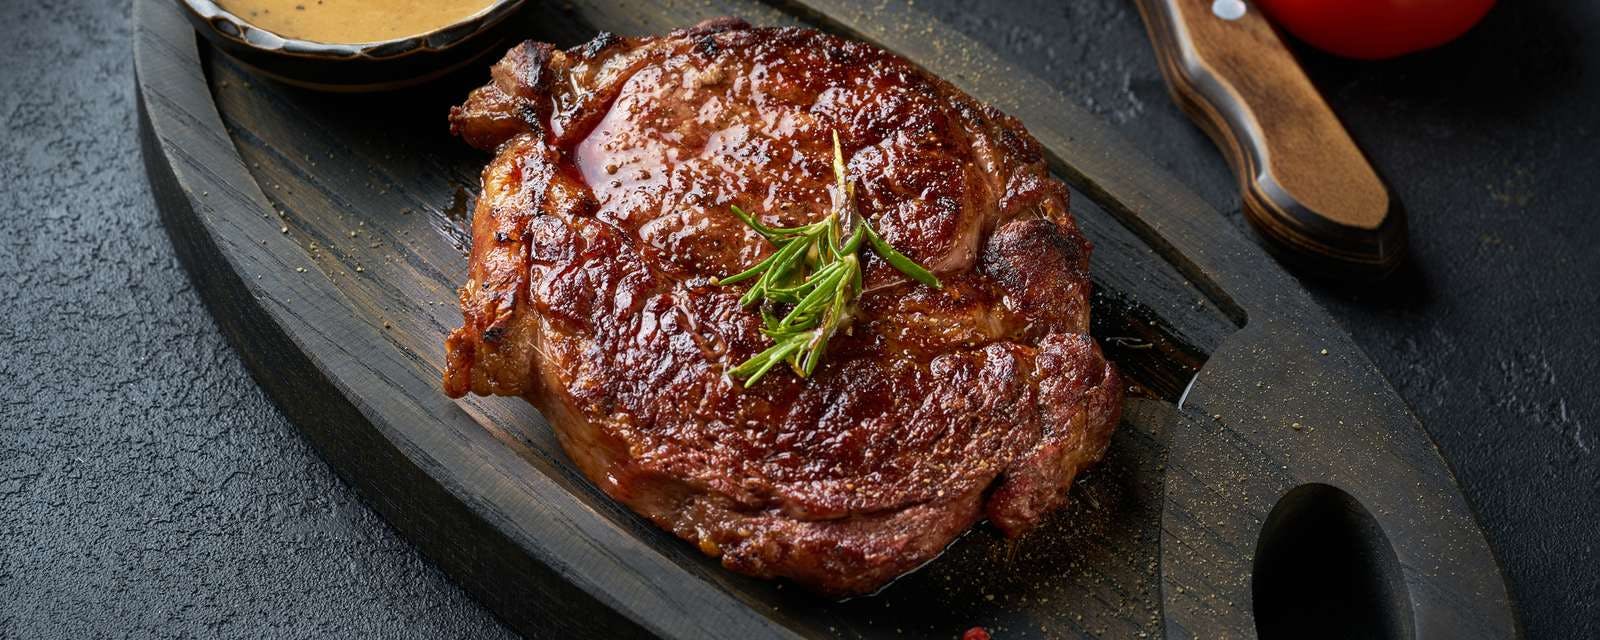 Steak mit Sauce auf Holzbrett